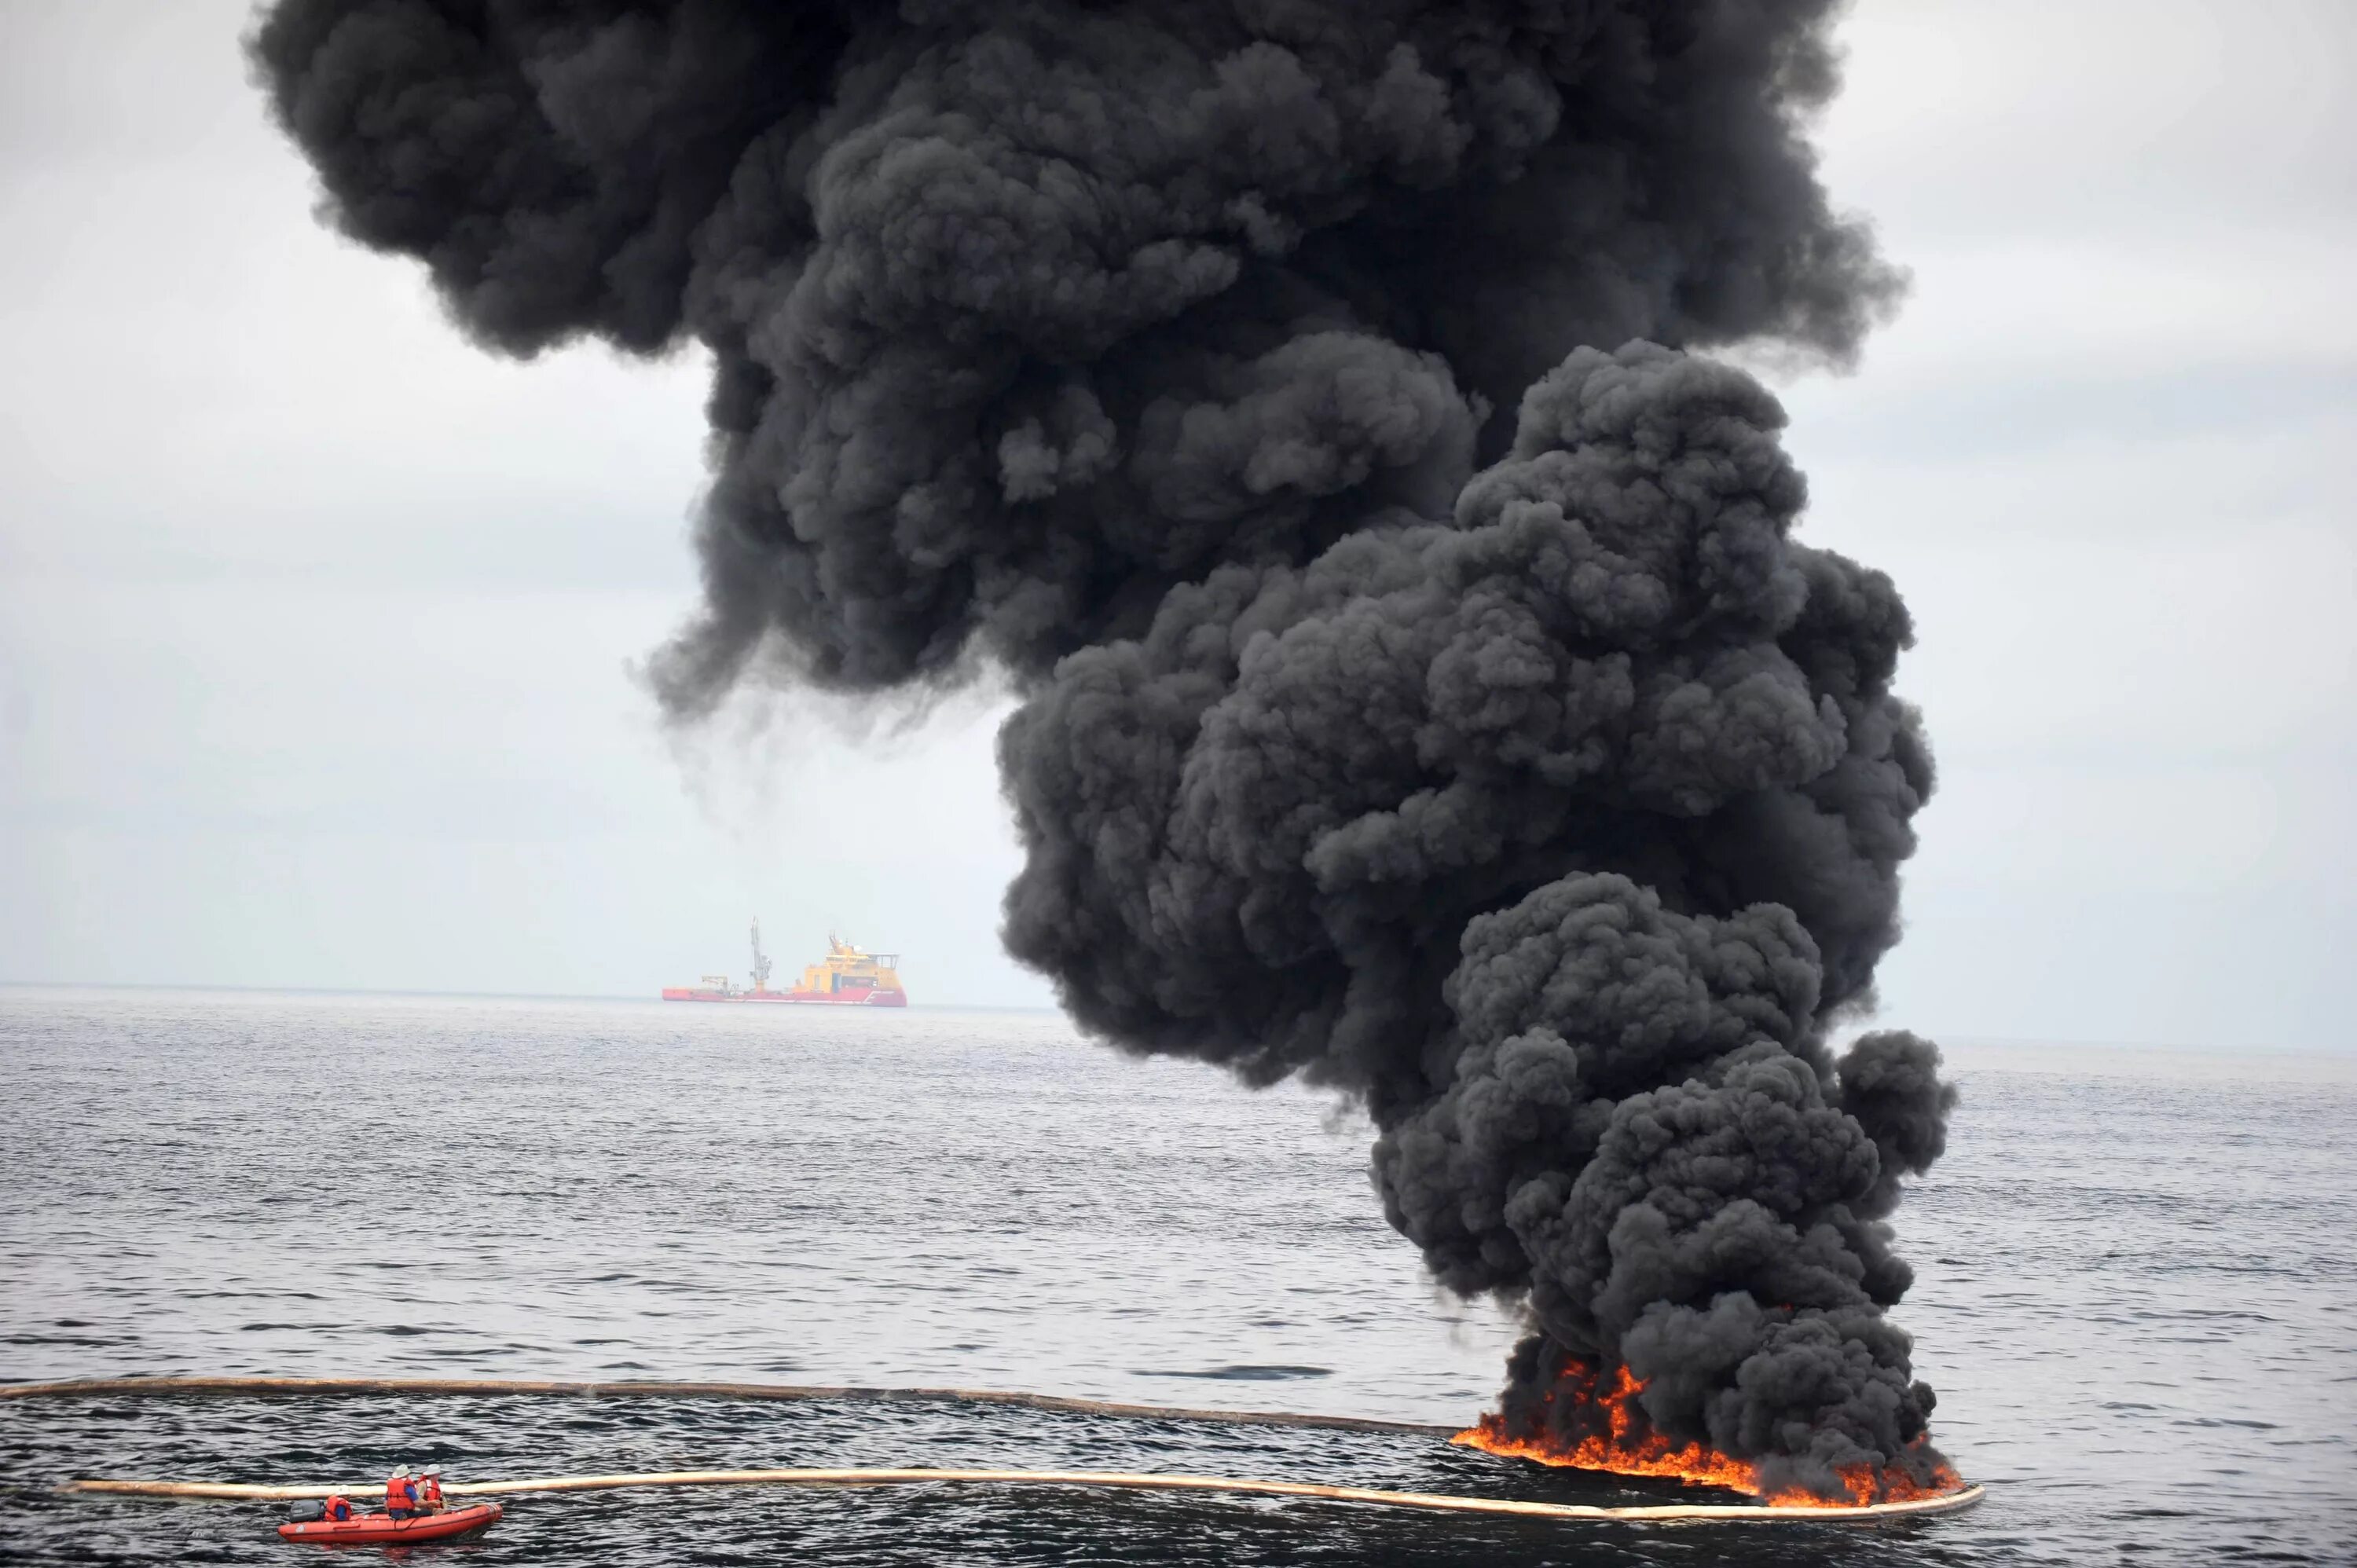 Что будет нефтью в мире. Deepwater Horizon разлив нефти. Разлив нефти в мексиканском заливе 2010. Нефтяная катастрофа в мексиканском заливе 2010. Взрыв нефтяной платформы Deepwater Horizon.